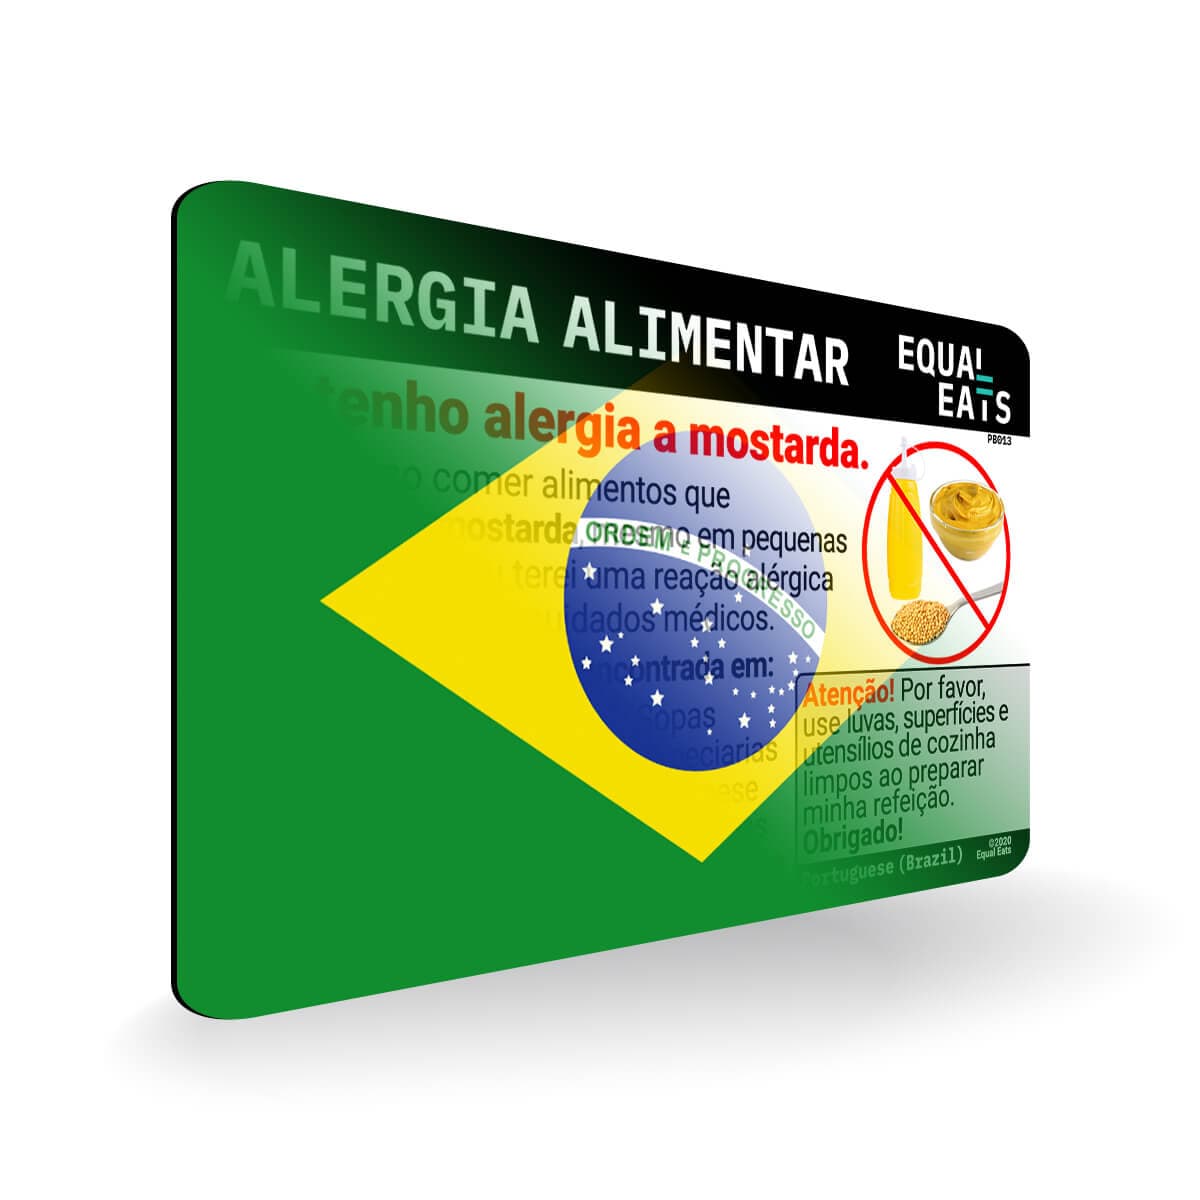 Mustard Allergy in Portuguese. Mustard Allergy Card for Brazil